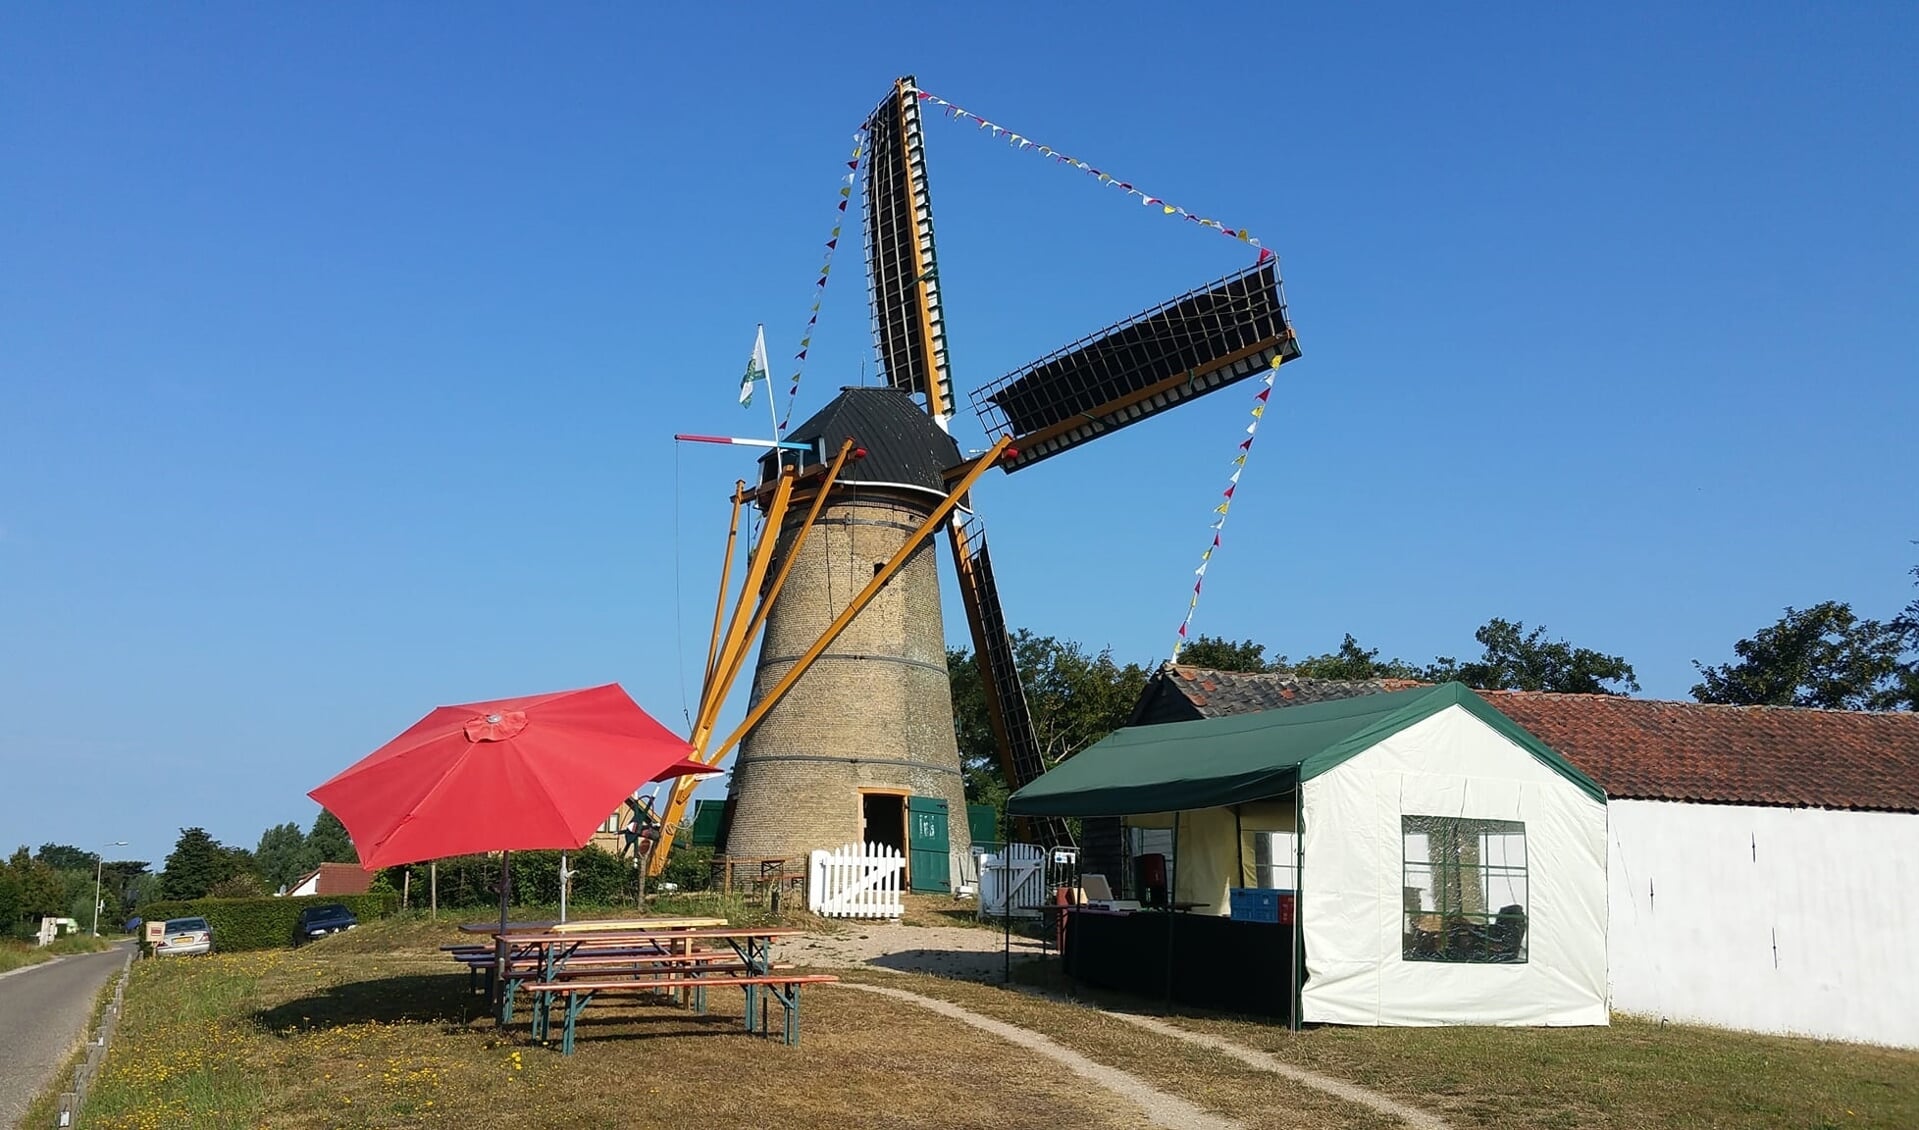 De molen in Oostvoorne